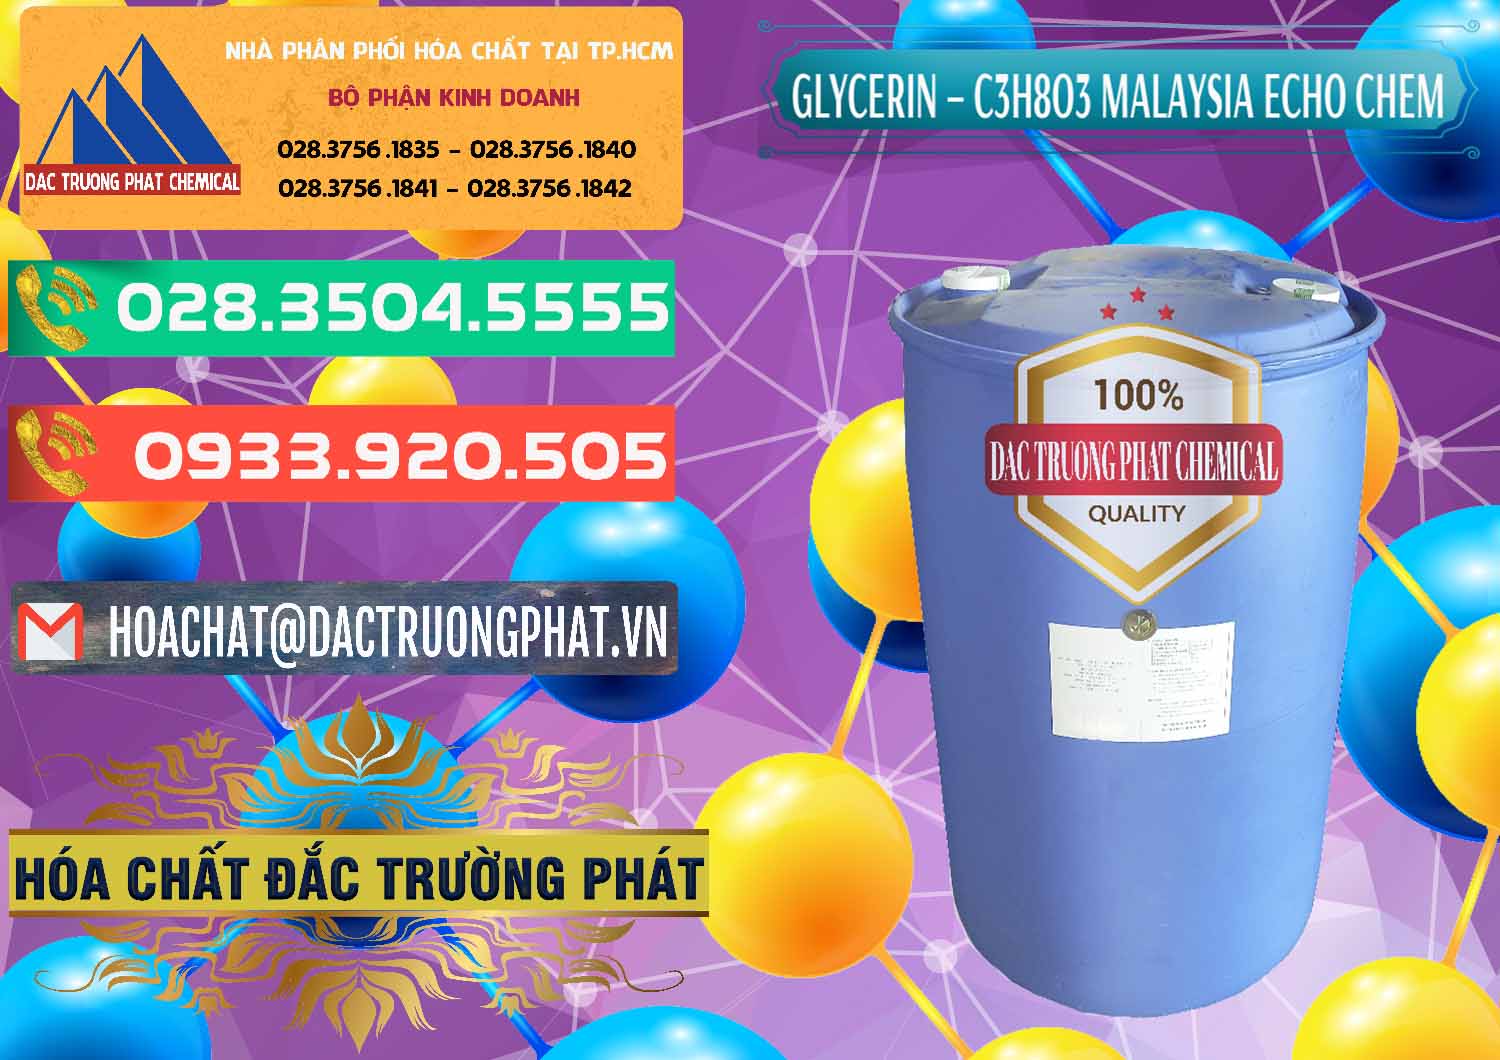 Cung ứng và bán Glycerin – C3H8O3 99.7% Echo Chem Malaysia - 0273 - Cung cấp & phân phối hóa chất tại TP.HCM - congtyhoachat.com.vn